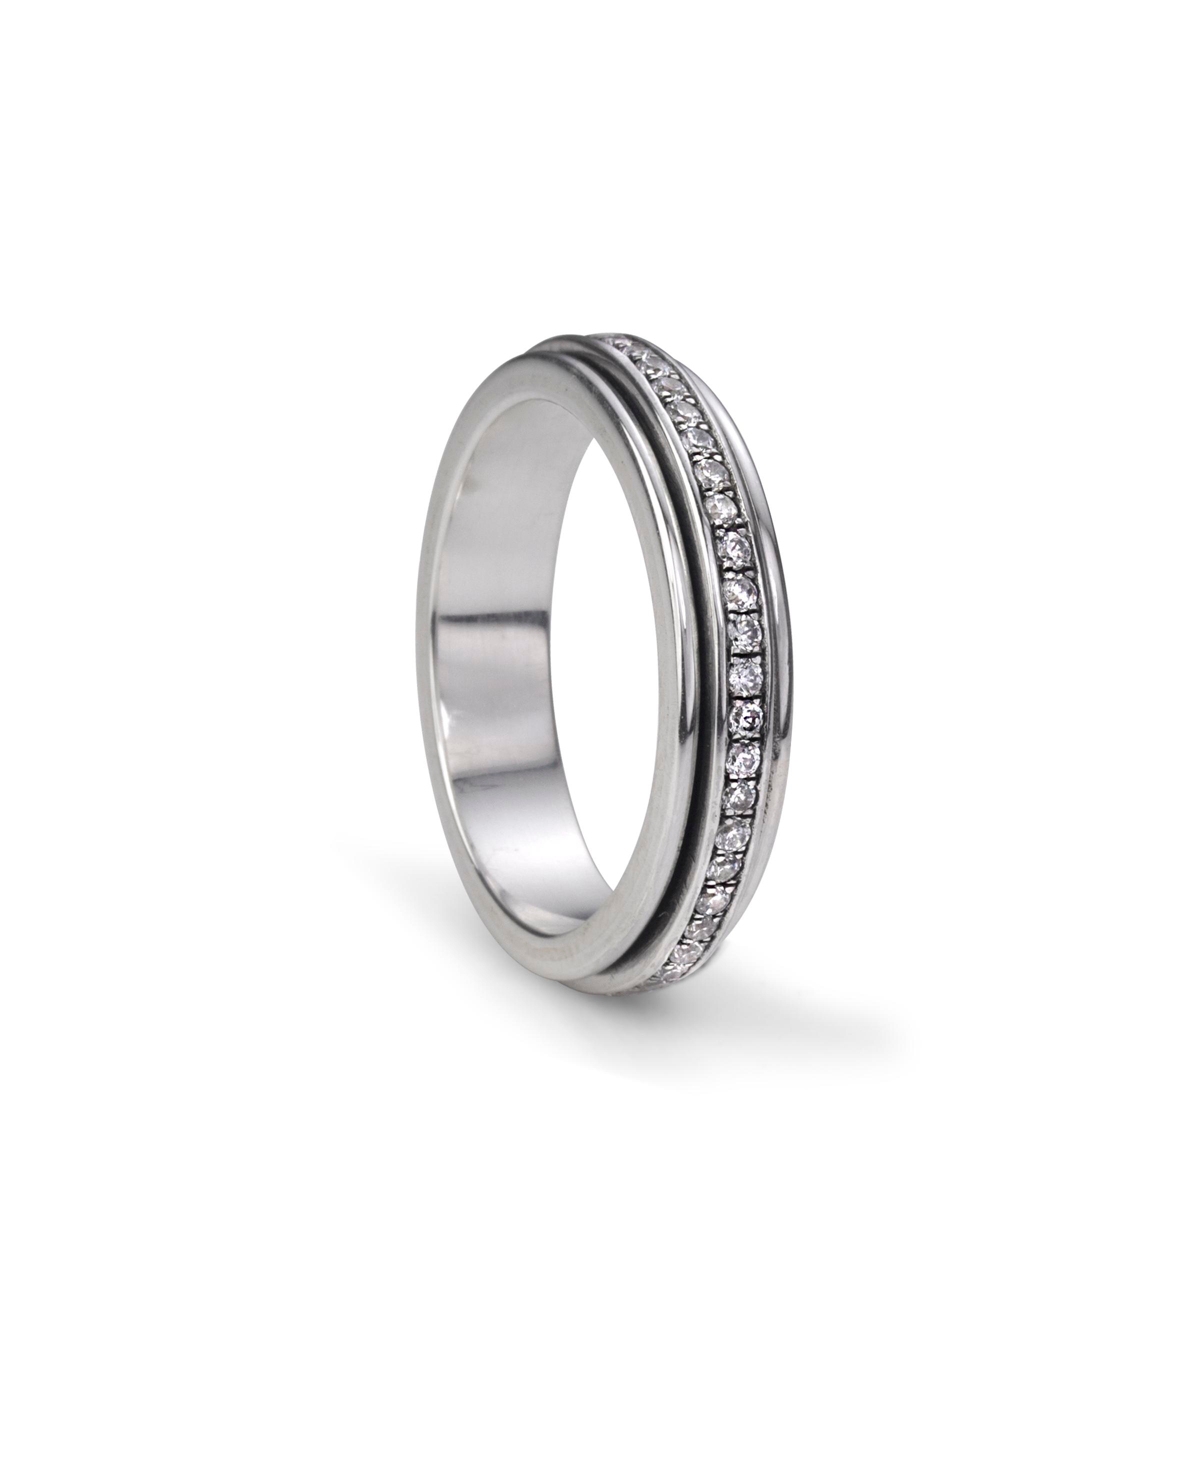 Lunar Ring - Silver